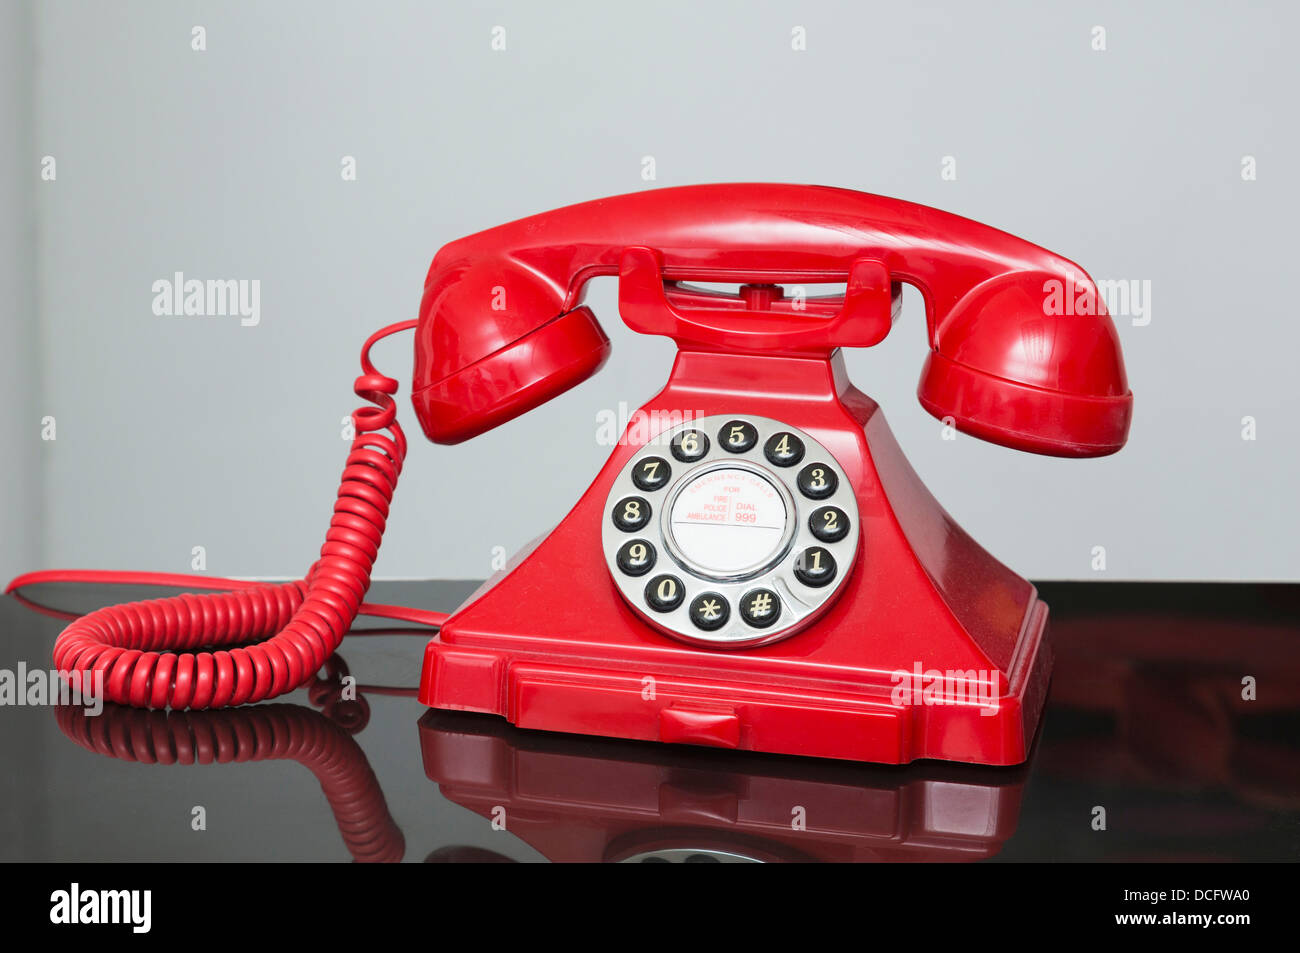 Retro style vintage rouge / téléphone de l'ère des années 1940 Années 1930 Banque D'Images